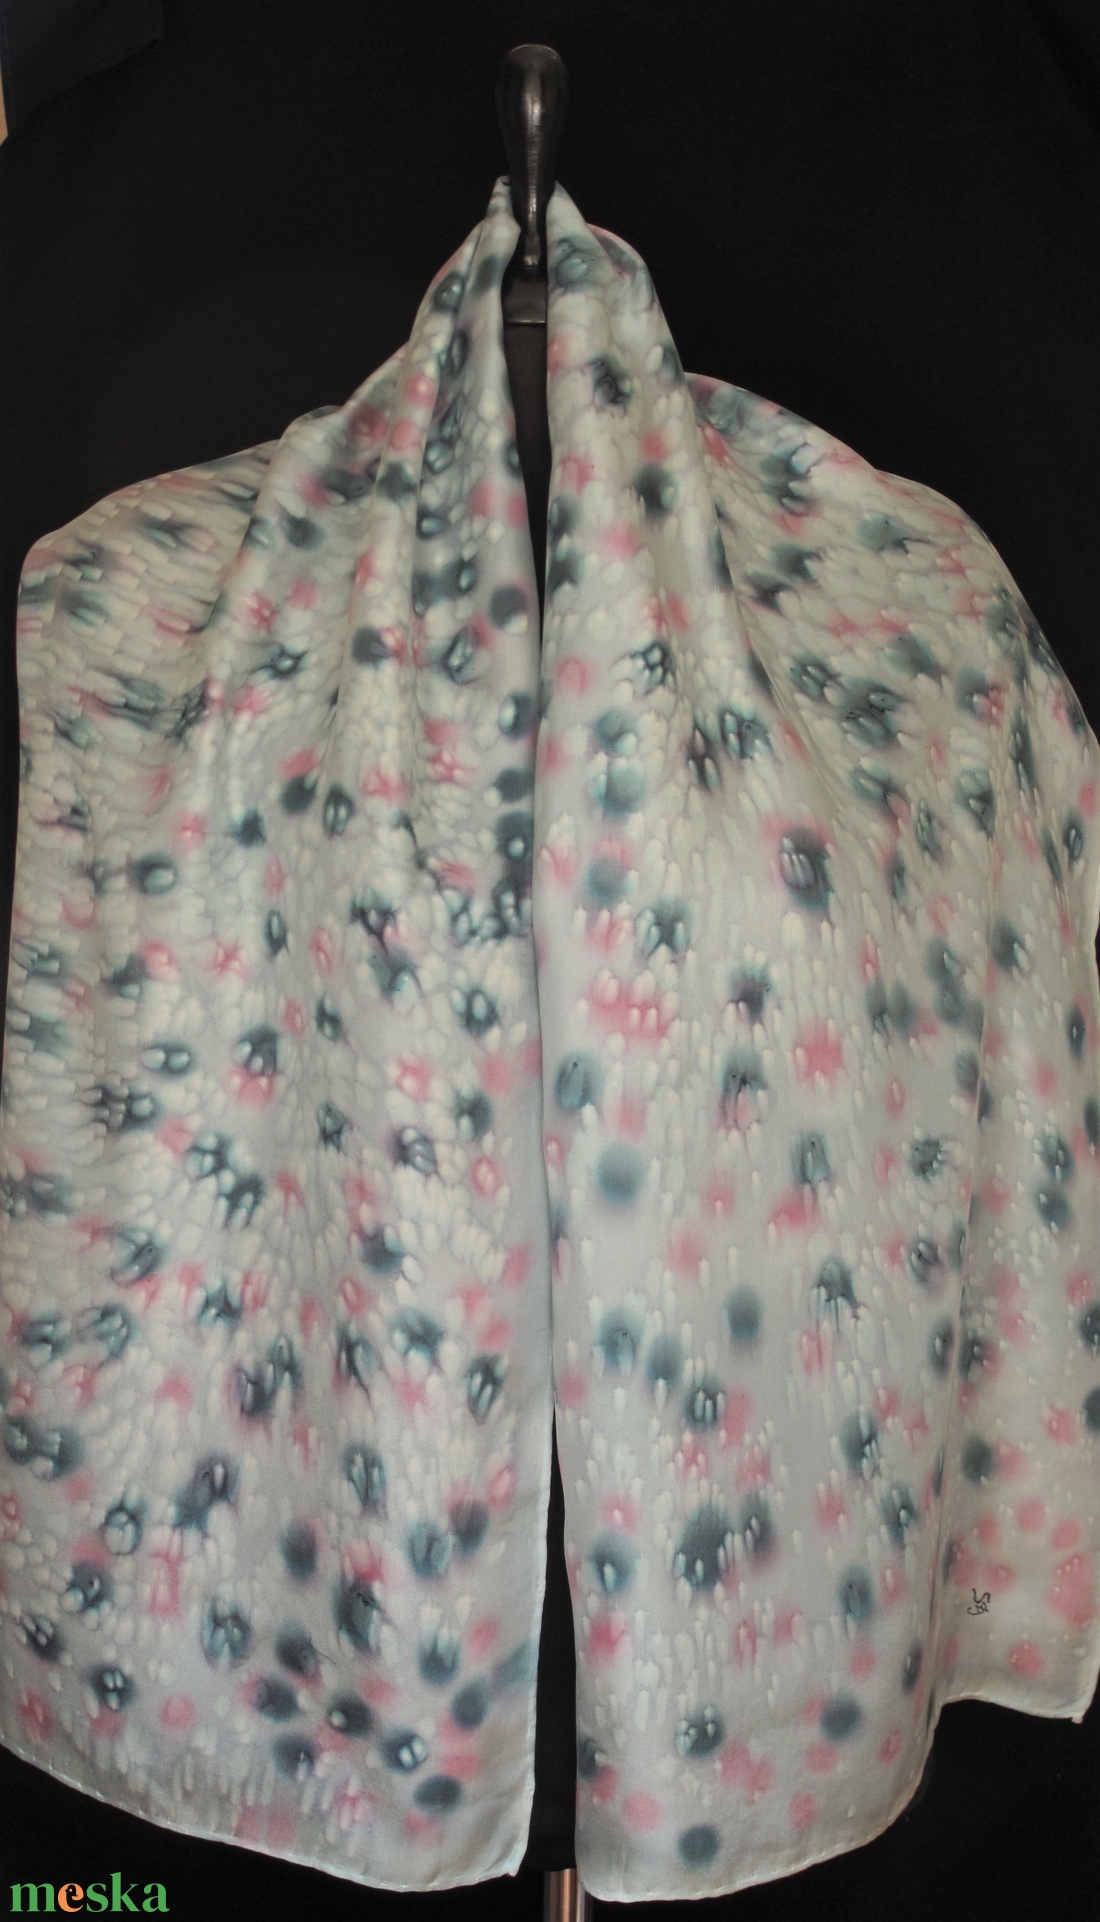 Halványszürke alapon szürke-rózsaszín foltmintás, varázsgyöngy  effekt díszítésü selyemsál 140x50 cm - ruha & divat - sál, sapka, kendő - sál - Meska.hu